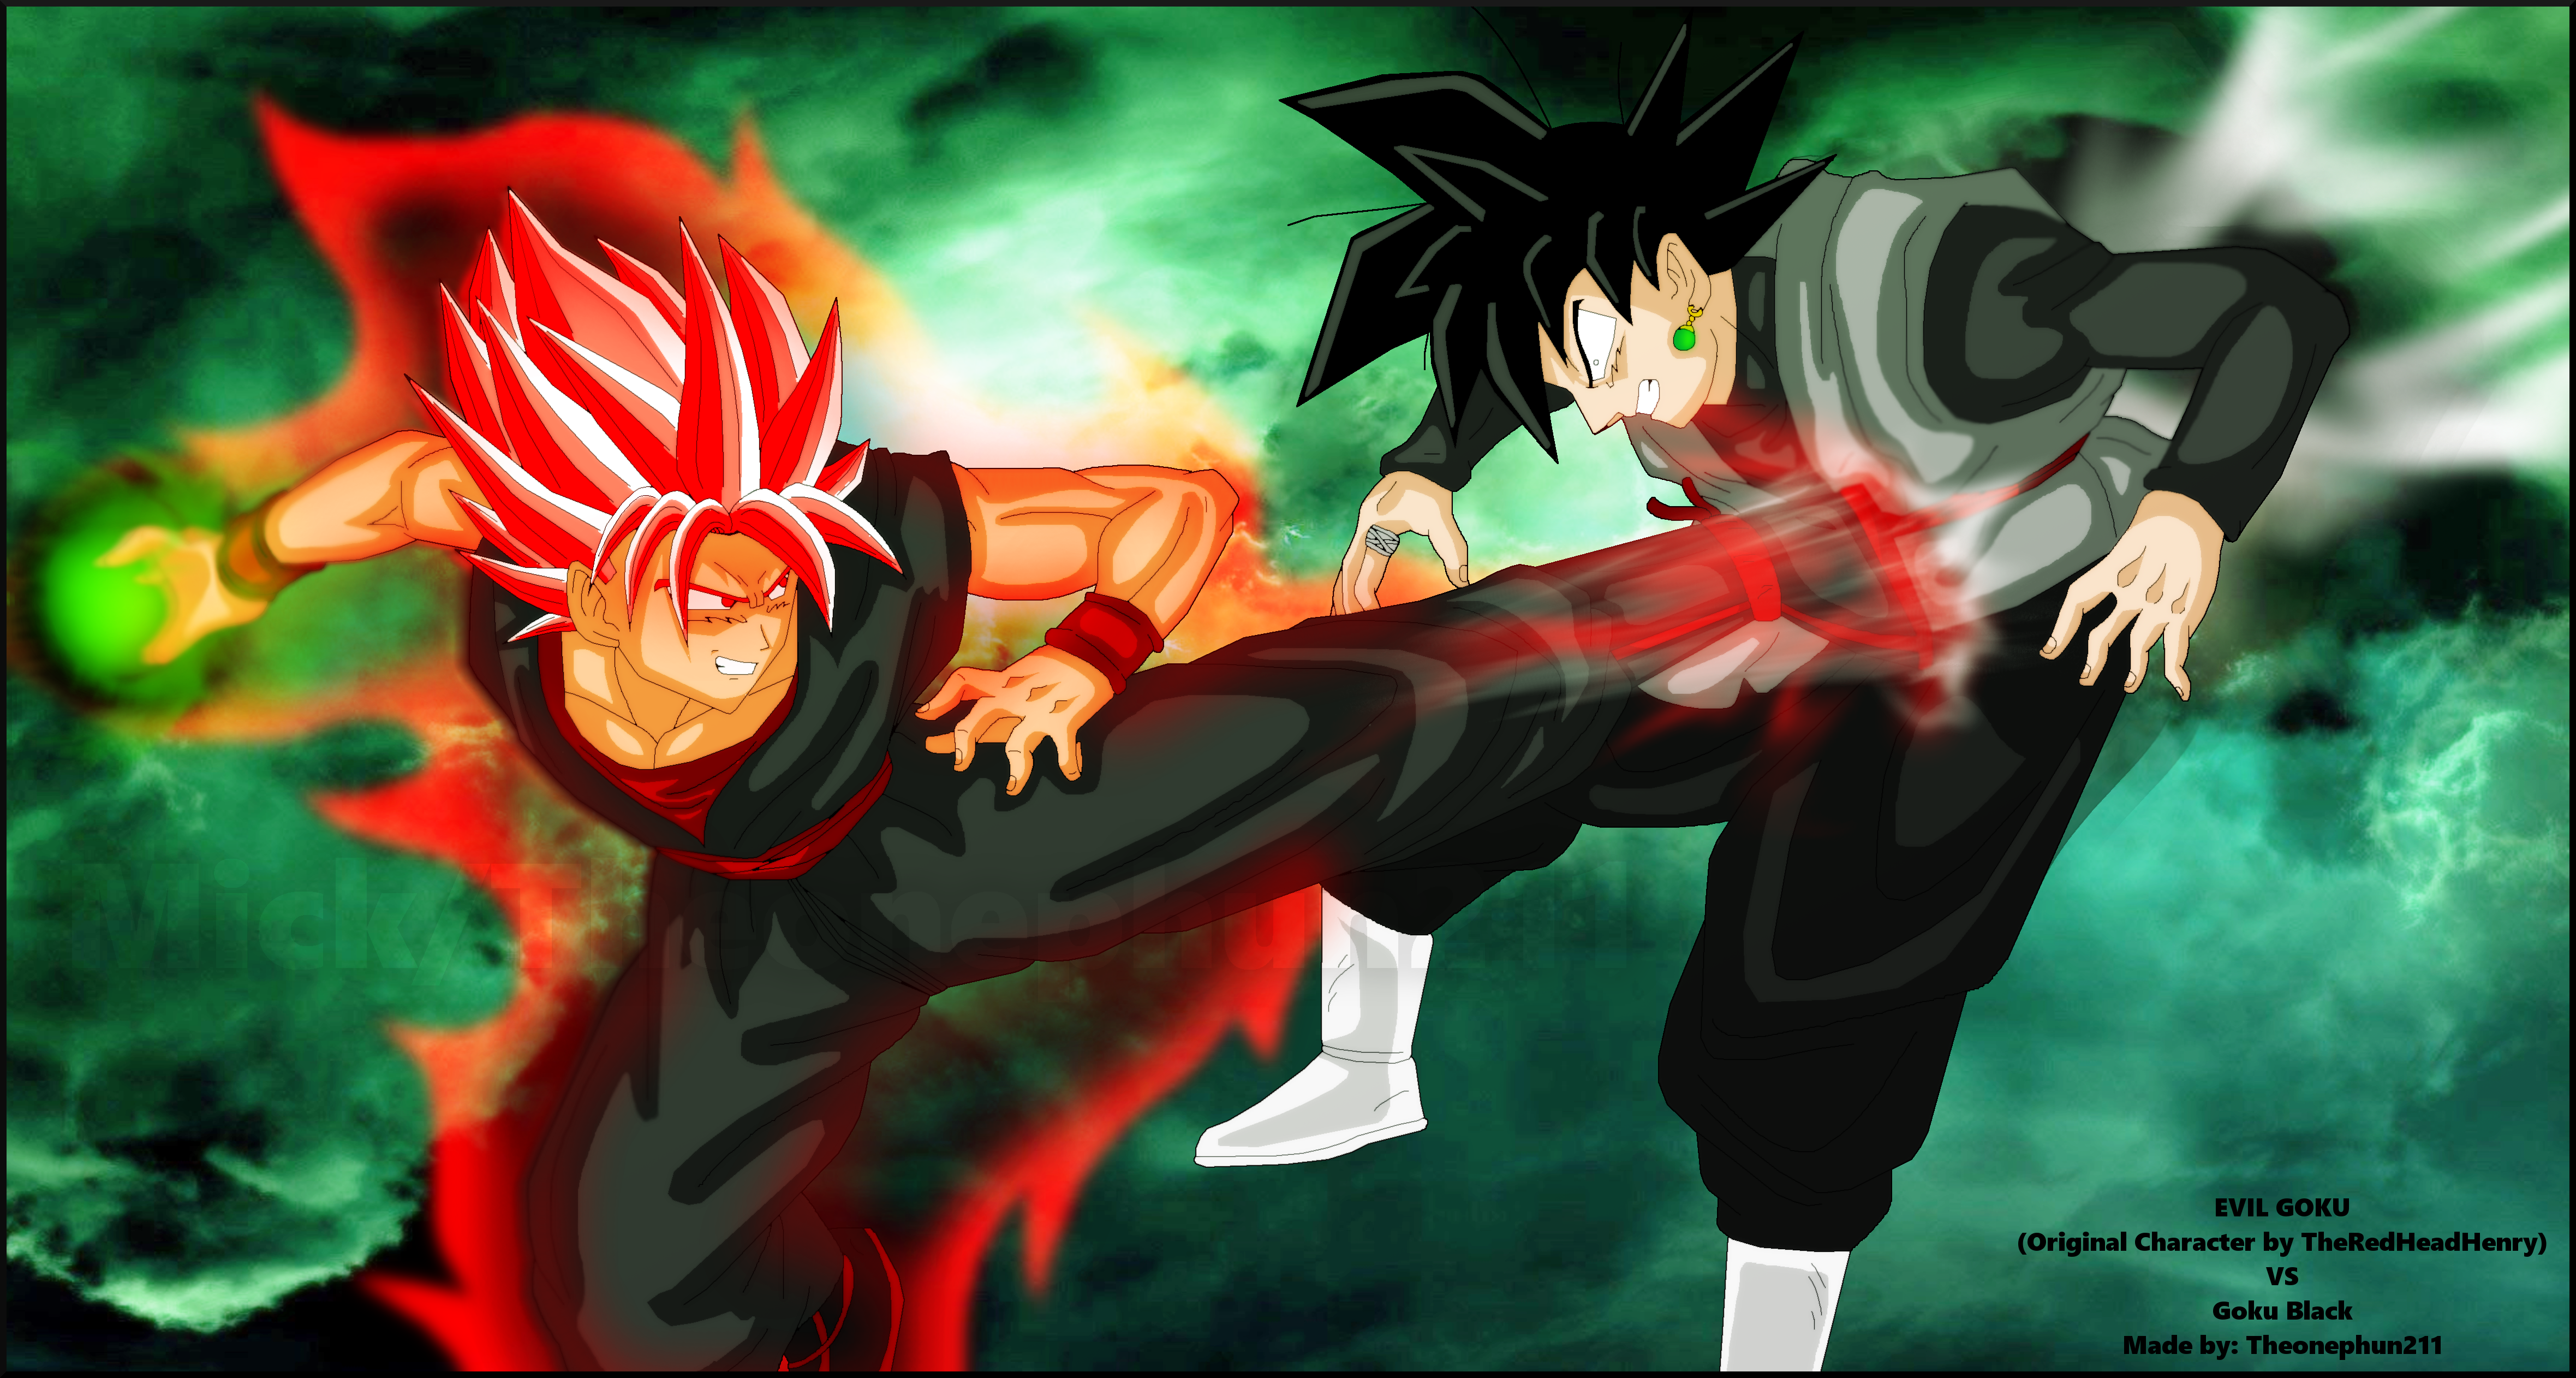 Evil Goku vs Goku Black (APPROVED BY HENRY) by TheOnePhun211 on DeviantArt